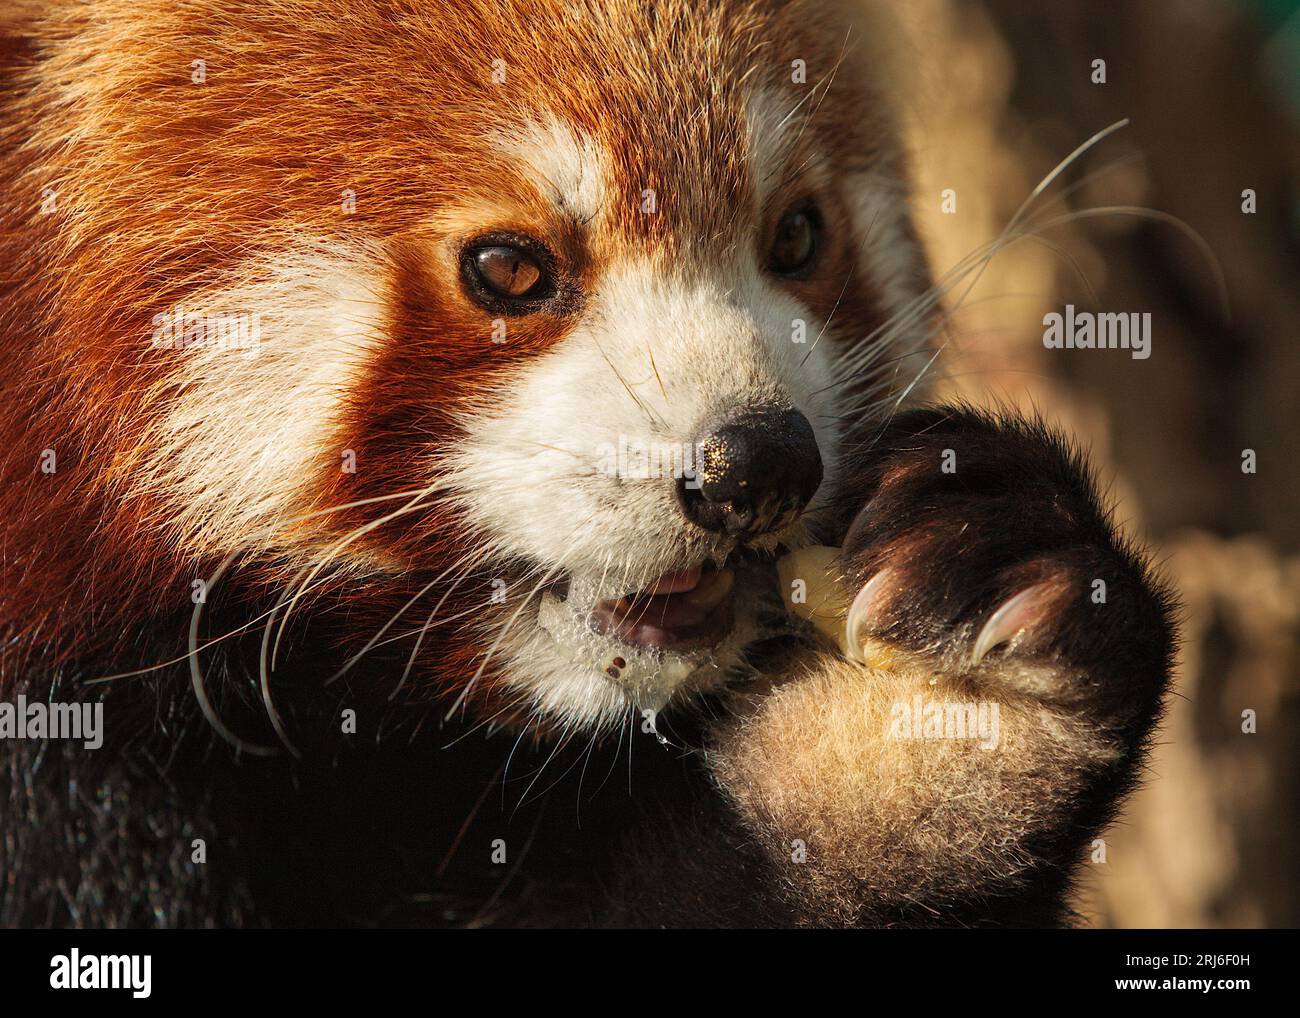 Nahaufnahme des Roten Pandas - Ailurus fulgens - tröpfeln beim Essen eines Stücks Obst, das seine Haltung mit seinen scharfen Klauen hat. Stockfoto